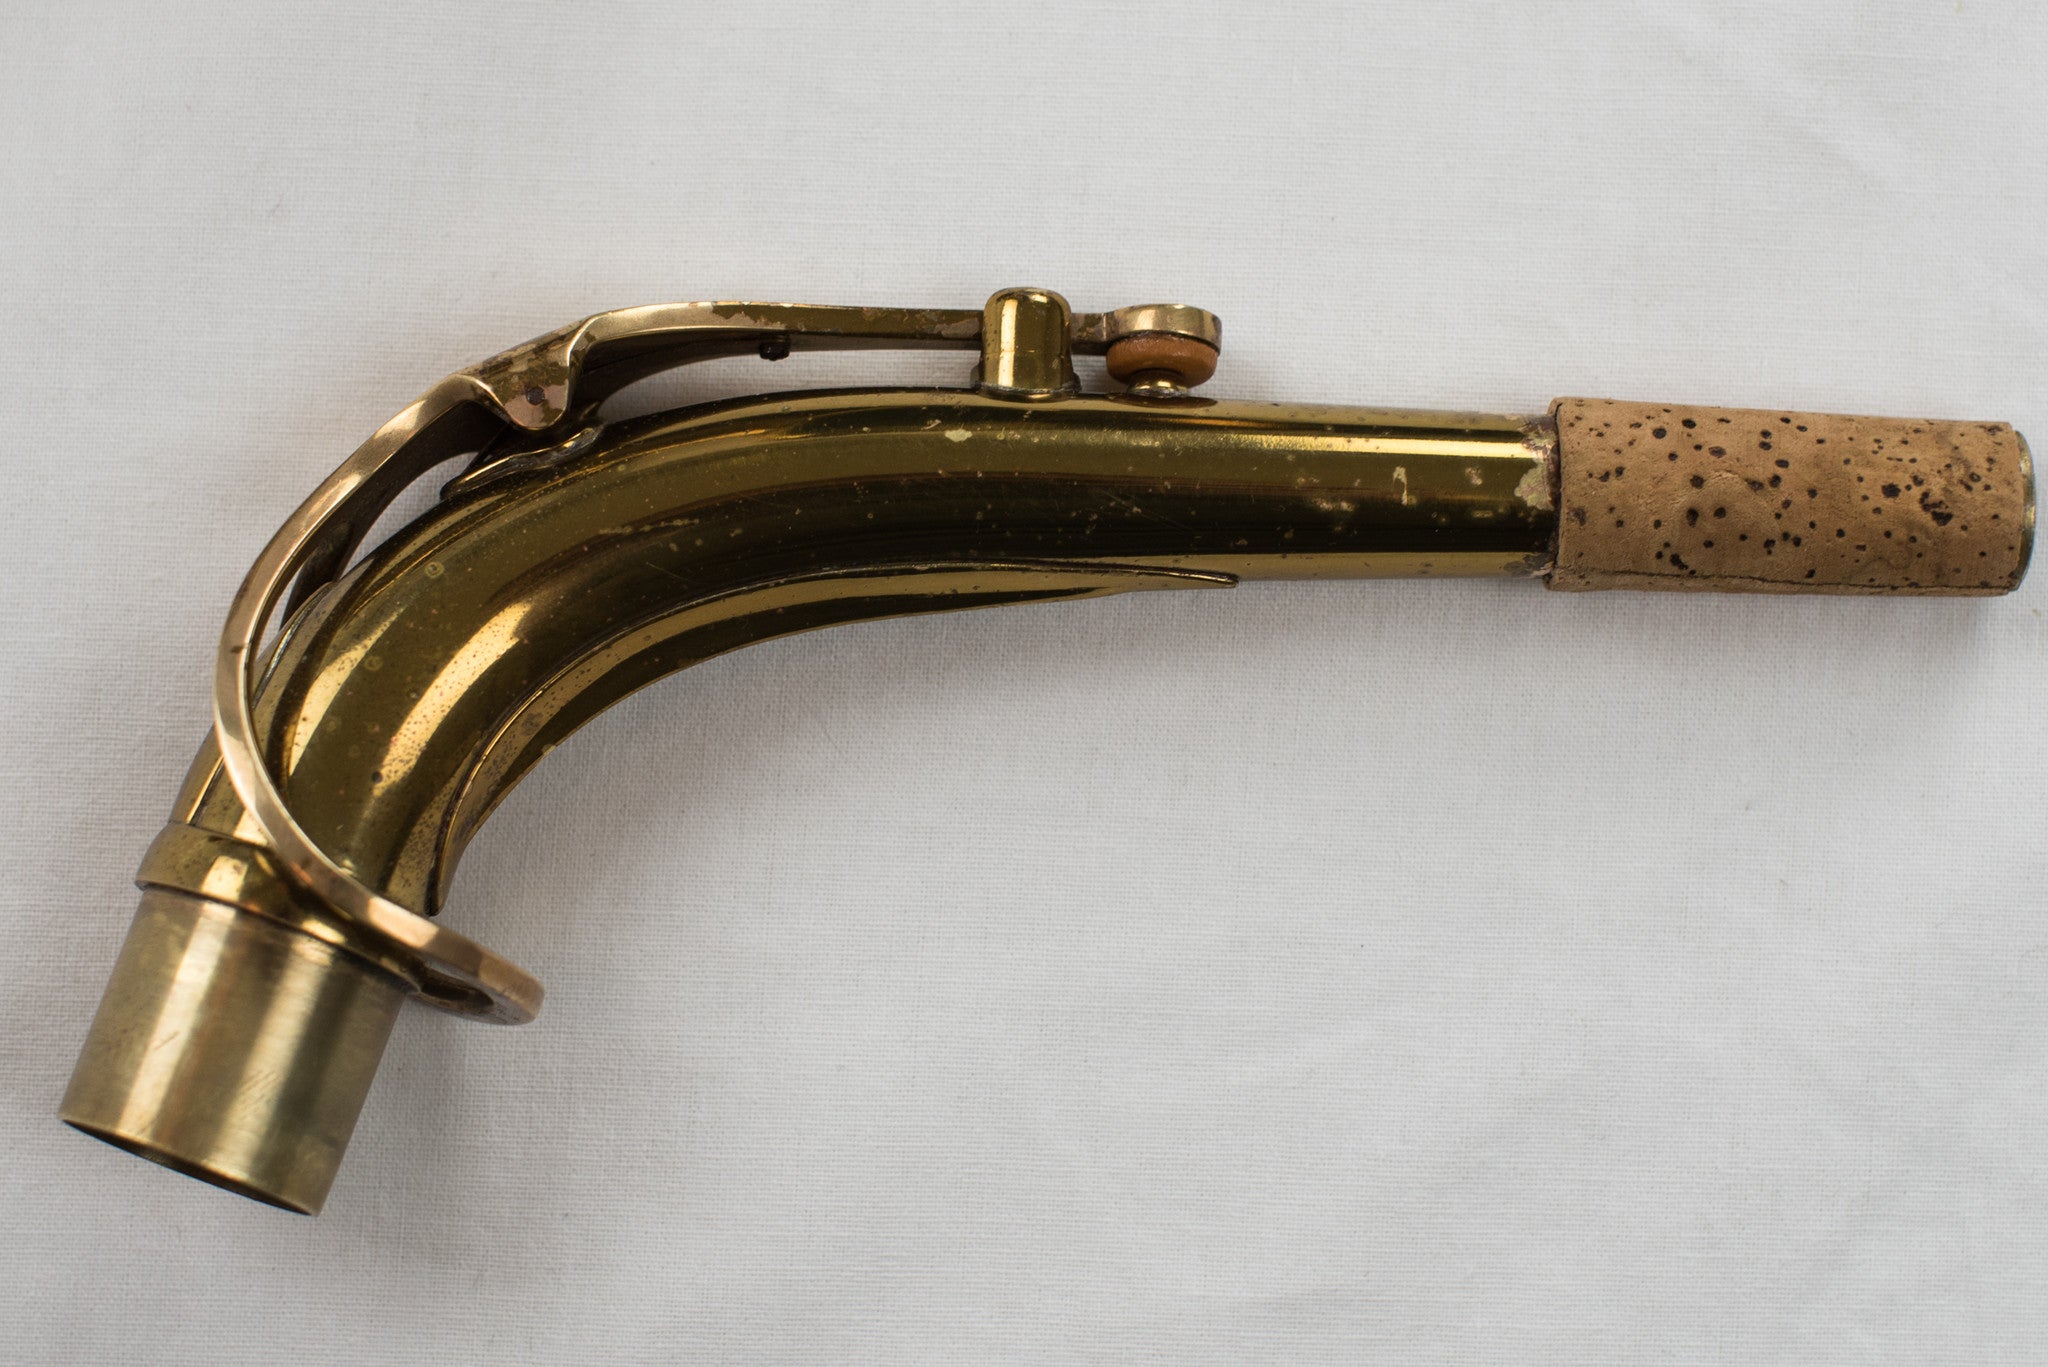 1954 Selmer Mark VI Alto Saxophone 98% ORIGINAL LACQUER, WOW!